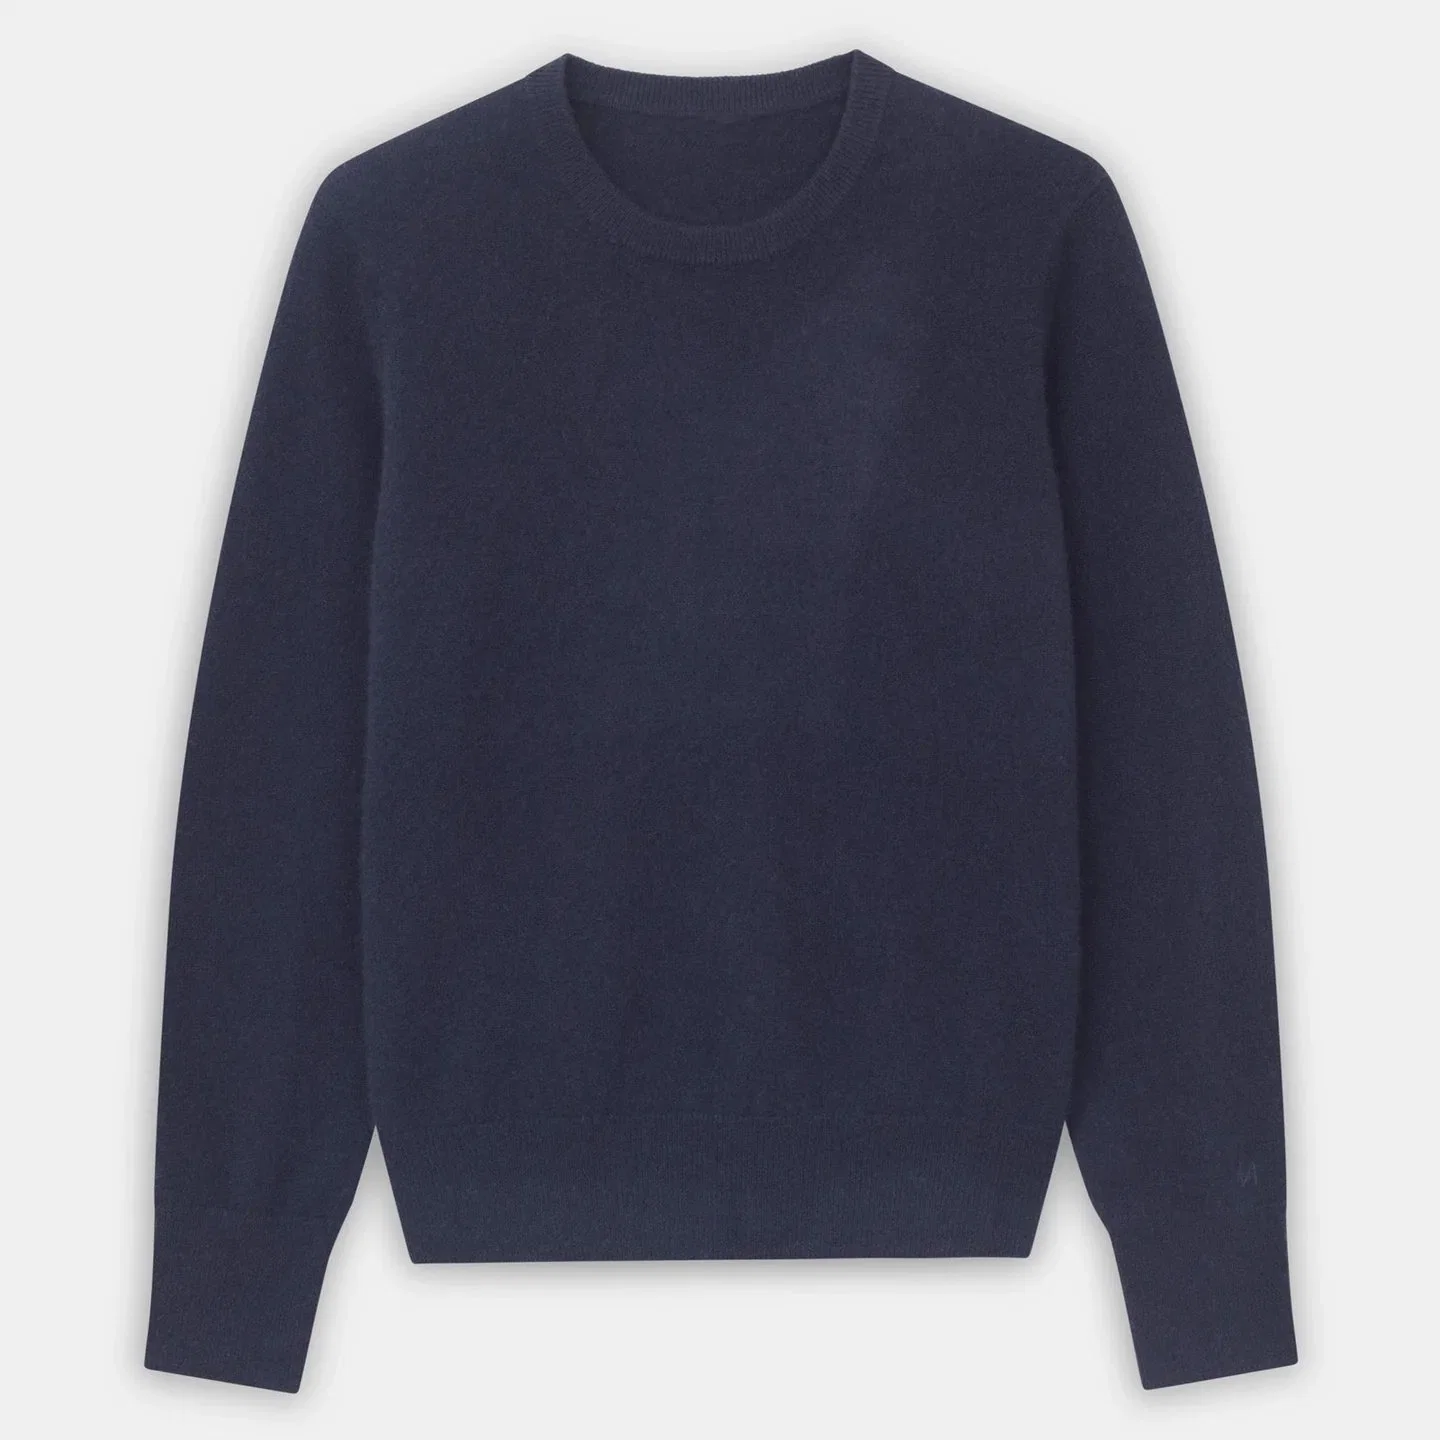 Cashmere Round Neck Ladies Sweater (23BRTNs47)